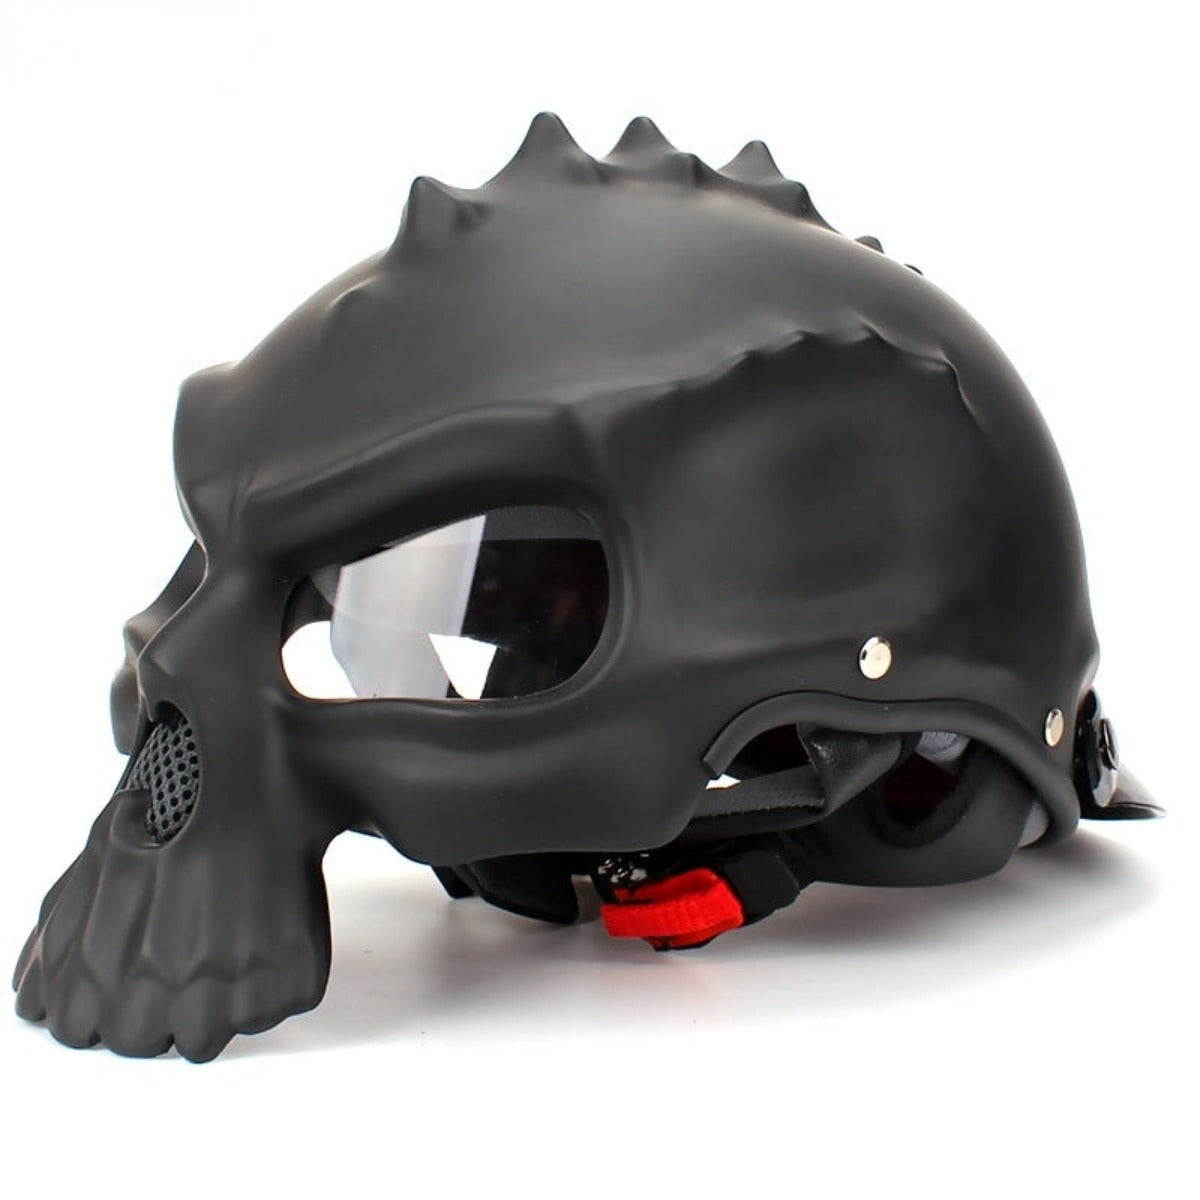 A Motorcycle Half Face Skull Helmet.